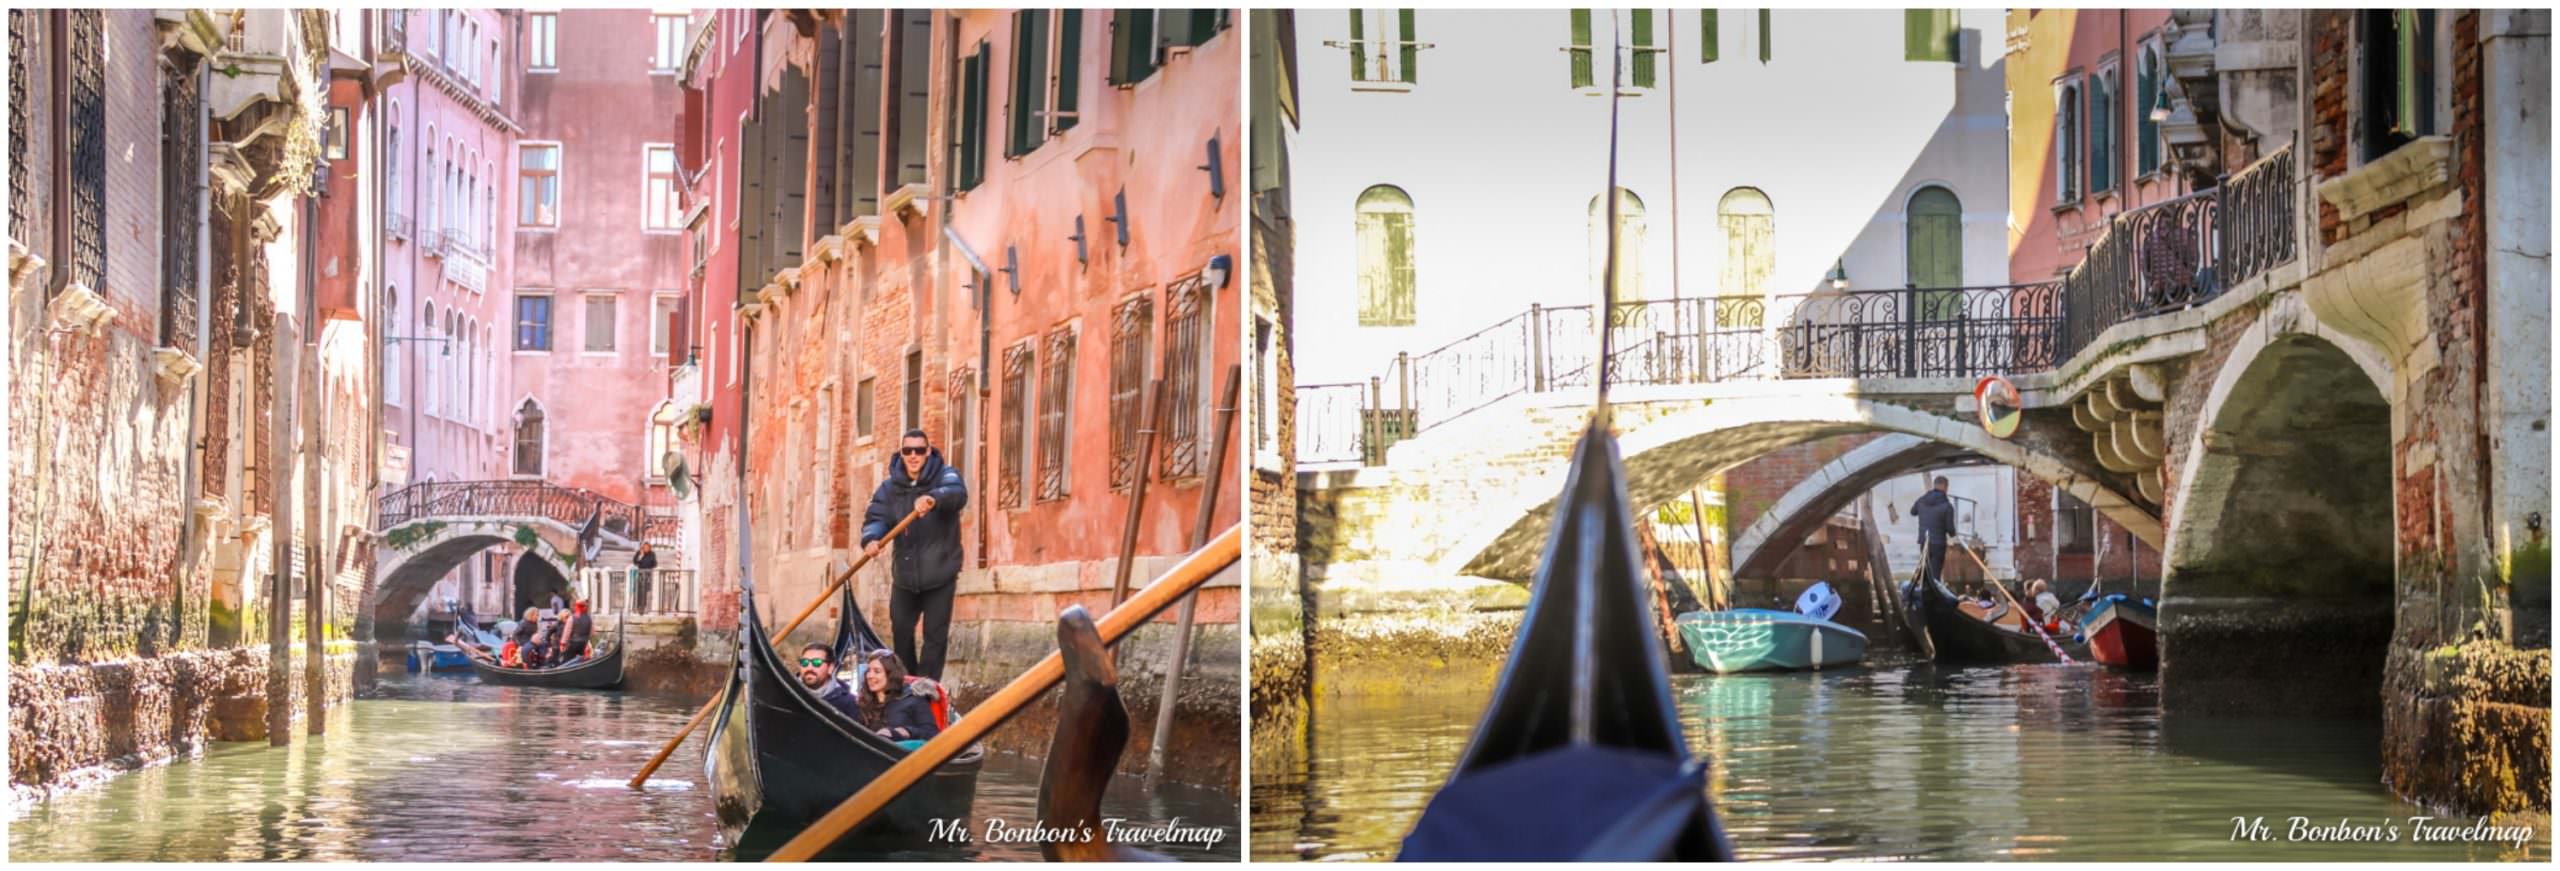 義大利威尼斯∣貢多拉(Gondola)-不可錯過的浪漫搭乘體驗分享